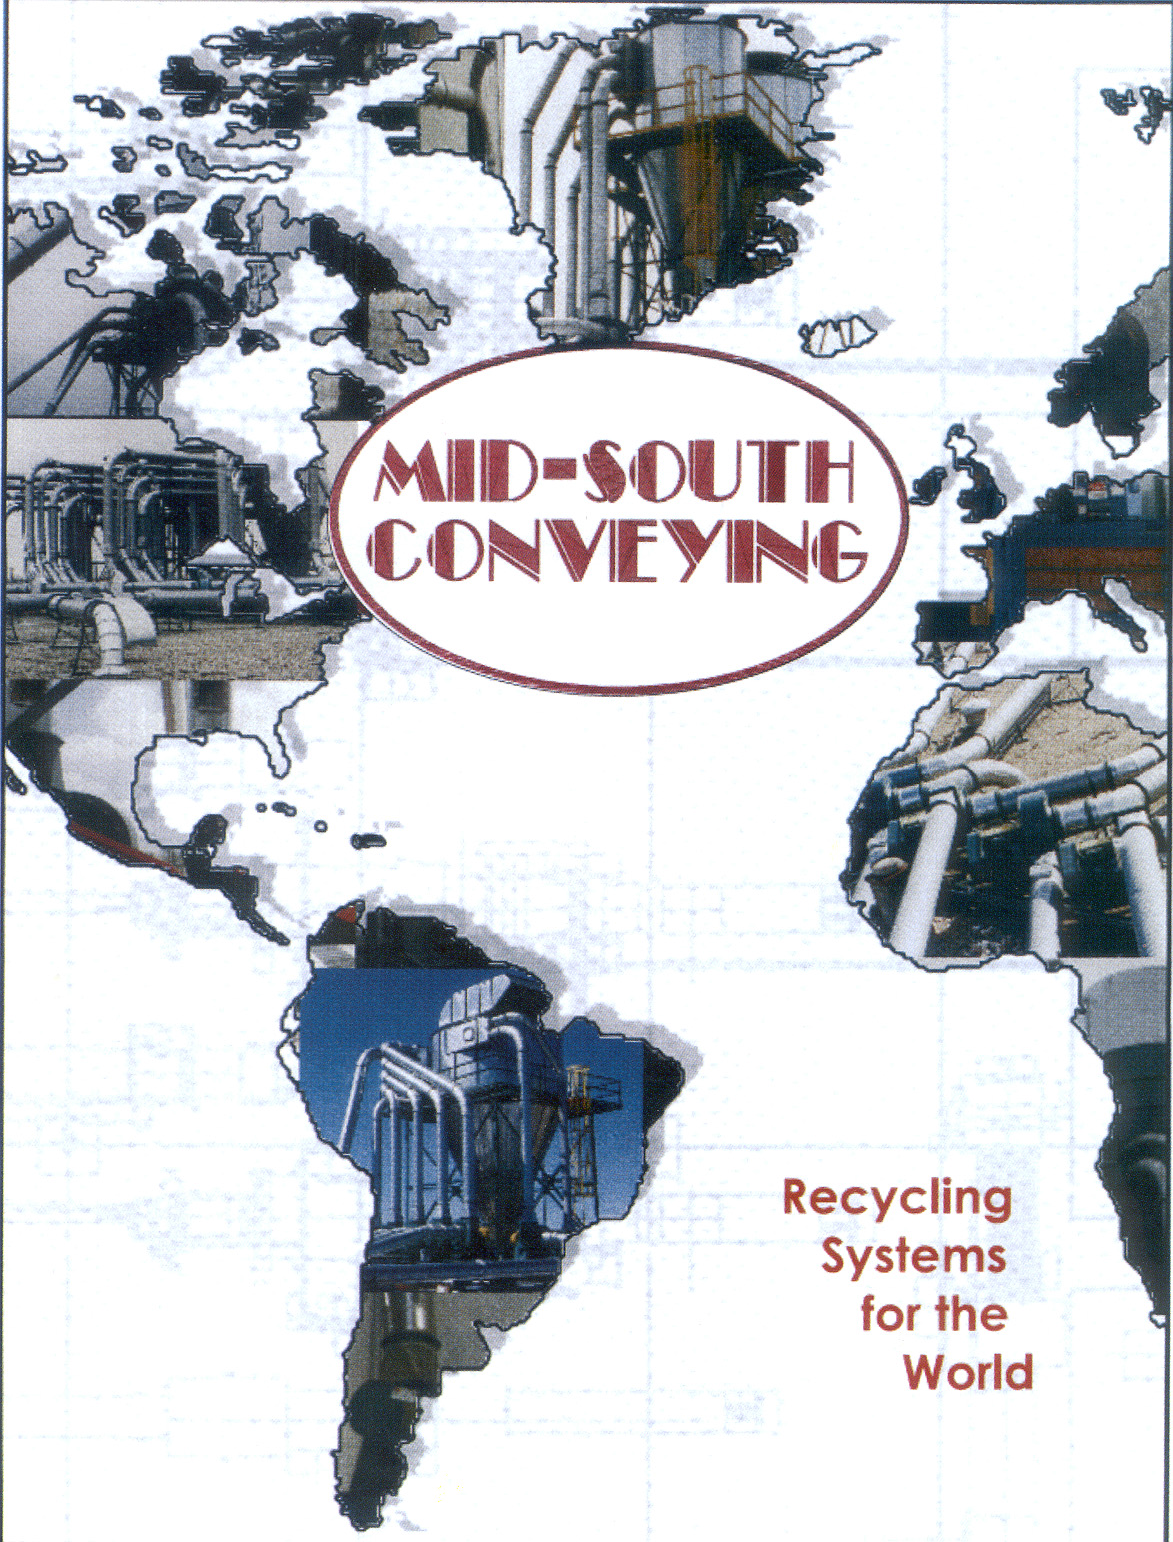 Conozca más acerca de los ciclones en el folleto de Midsouth Conveying.